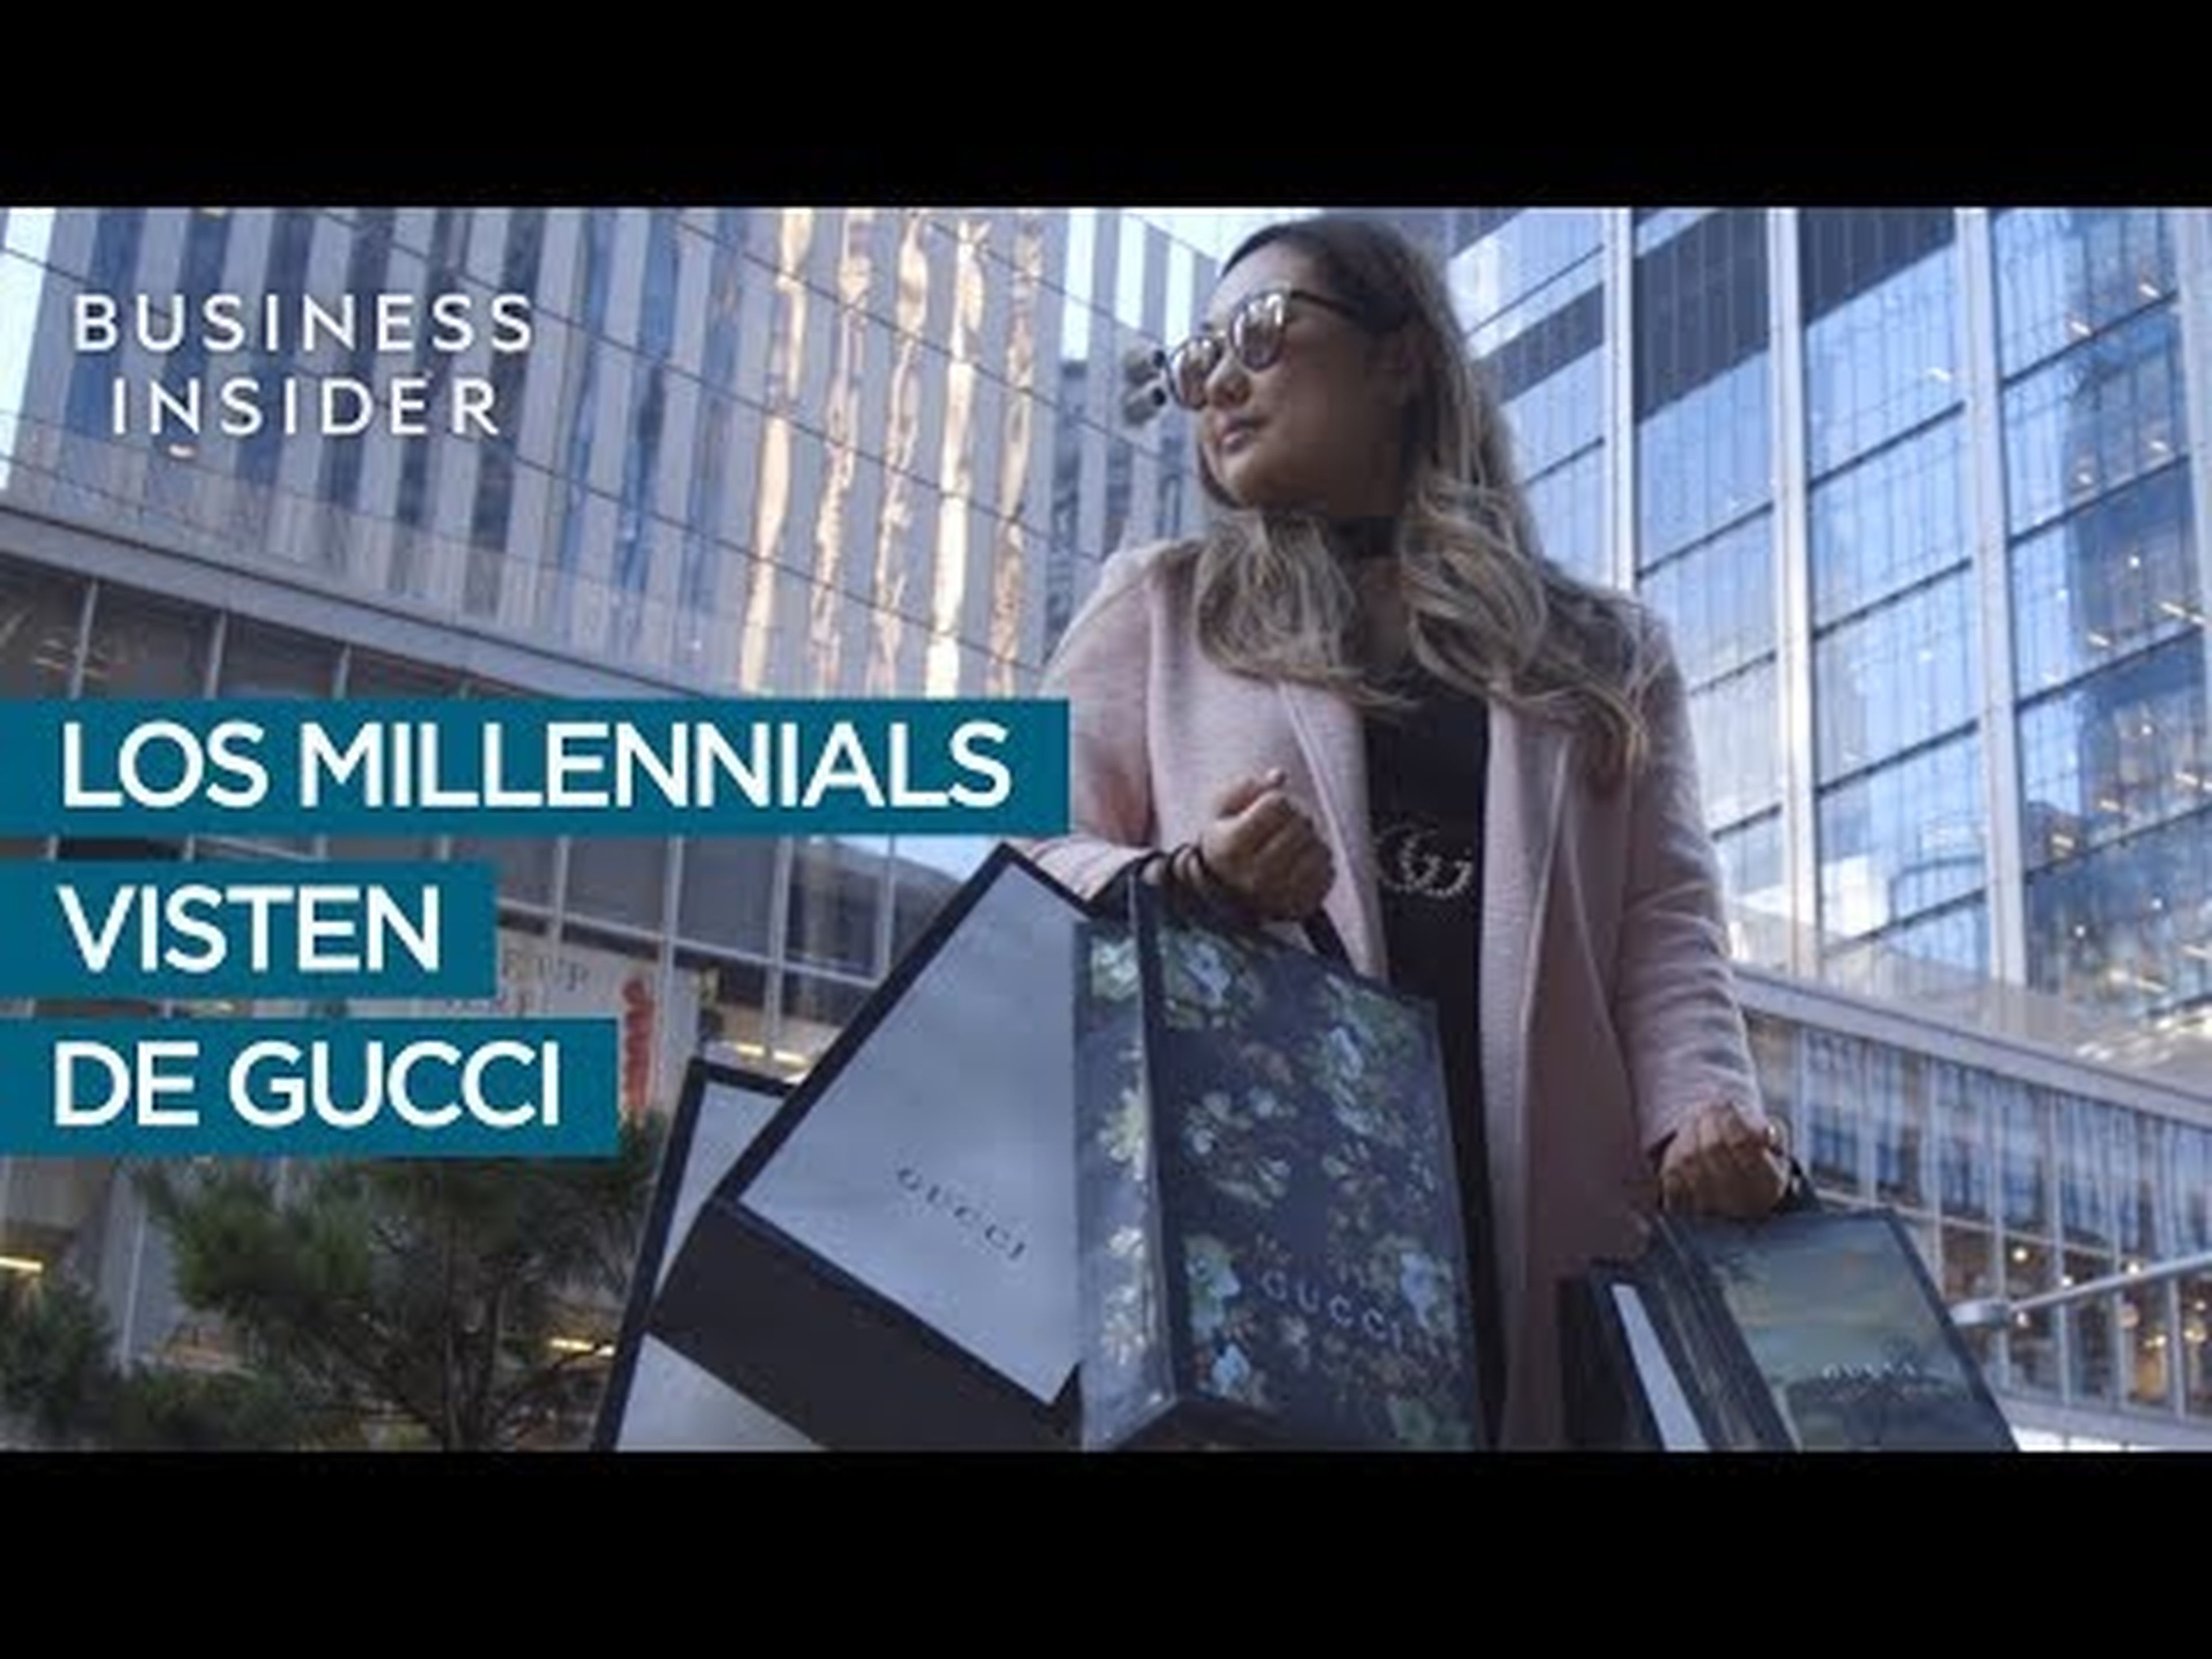 Los millennials visten de Gucci